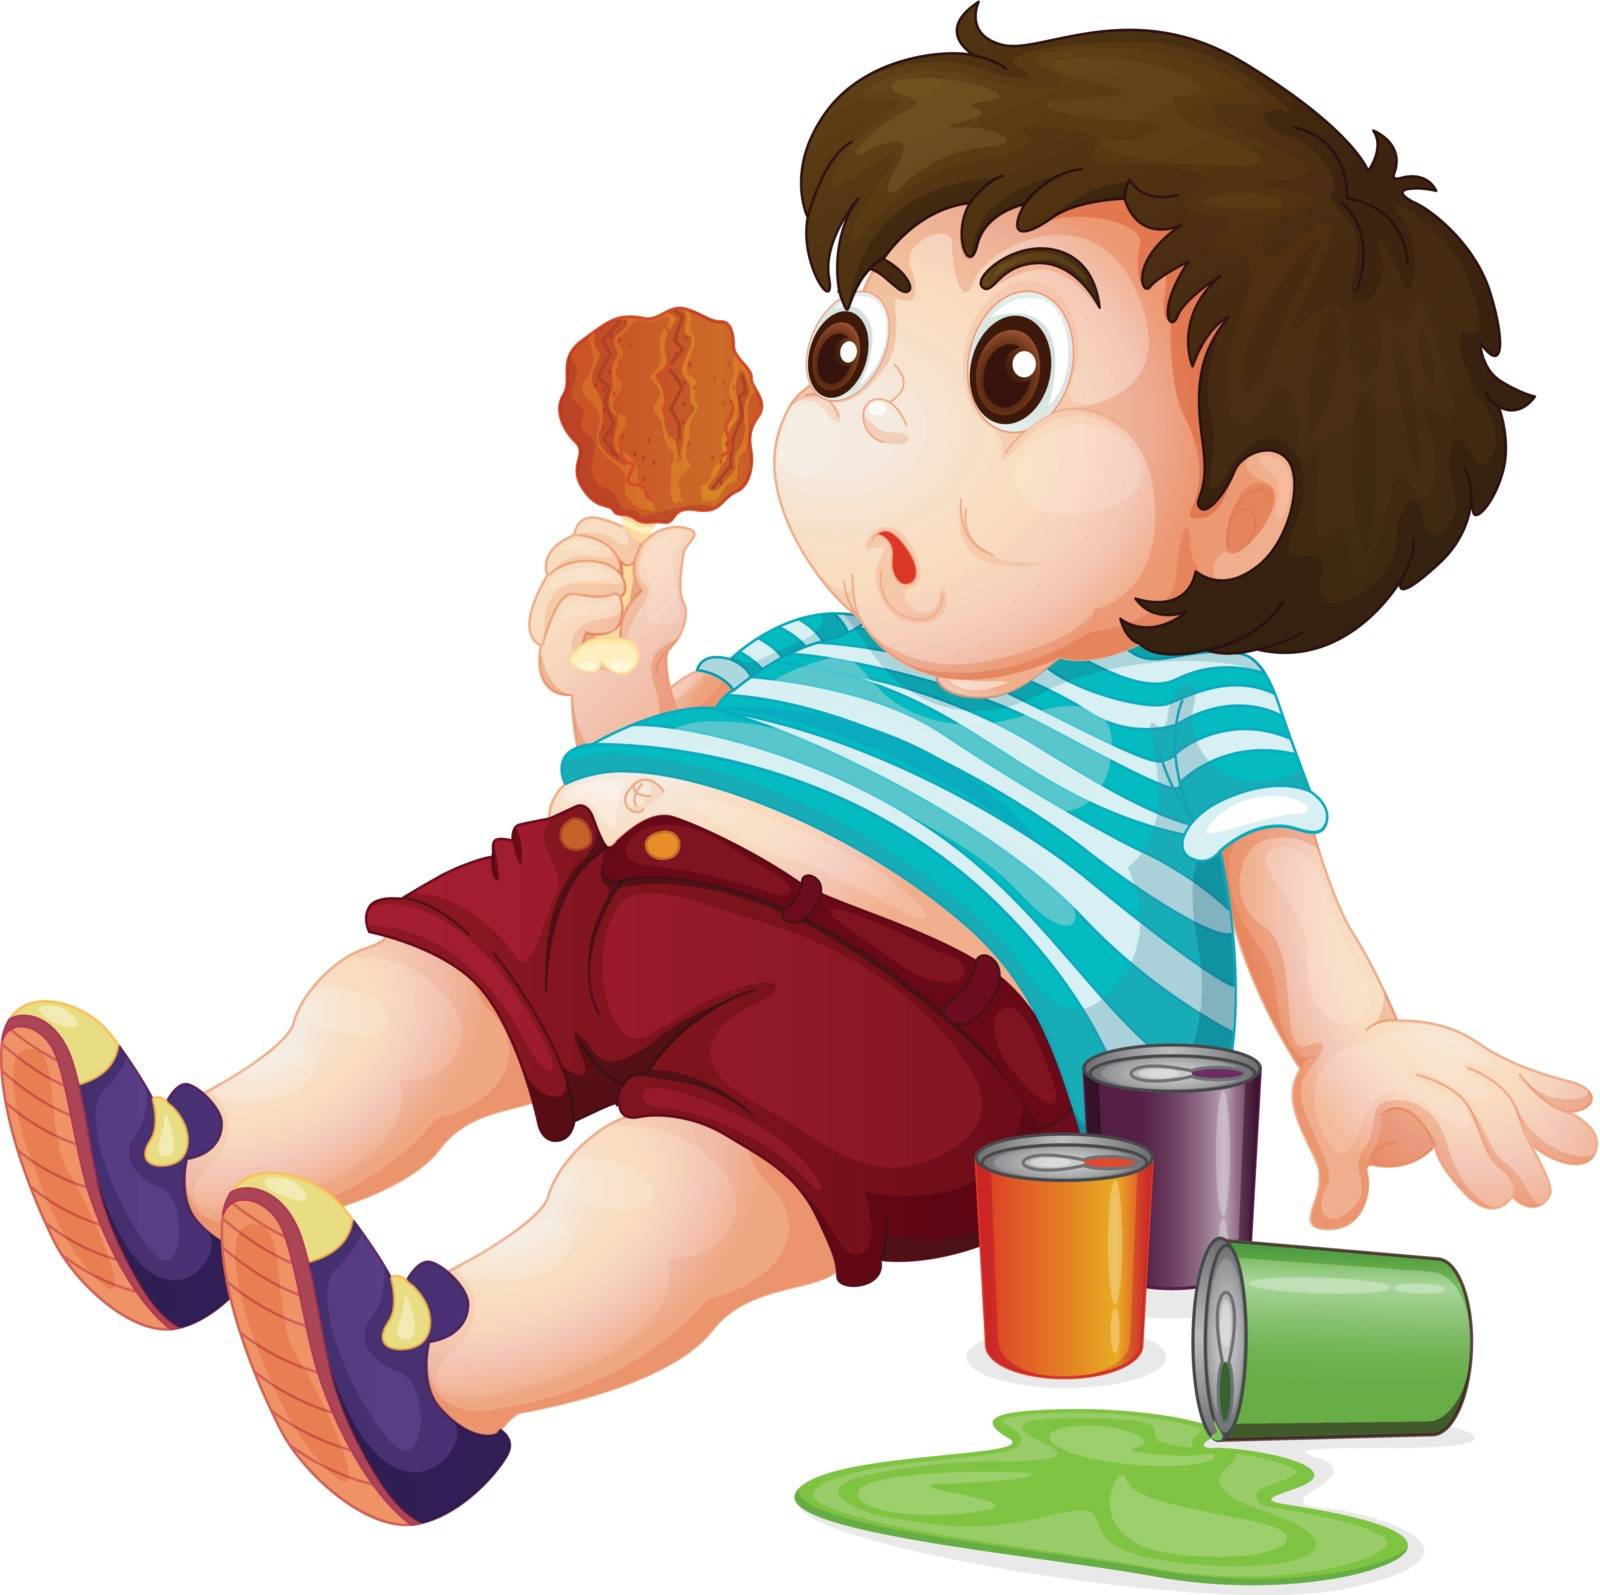 Illustration of a full fat kid